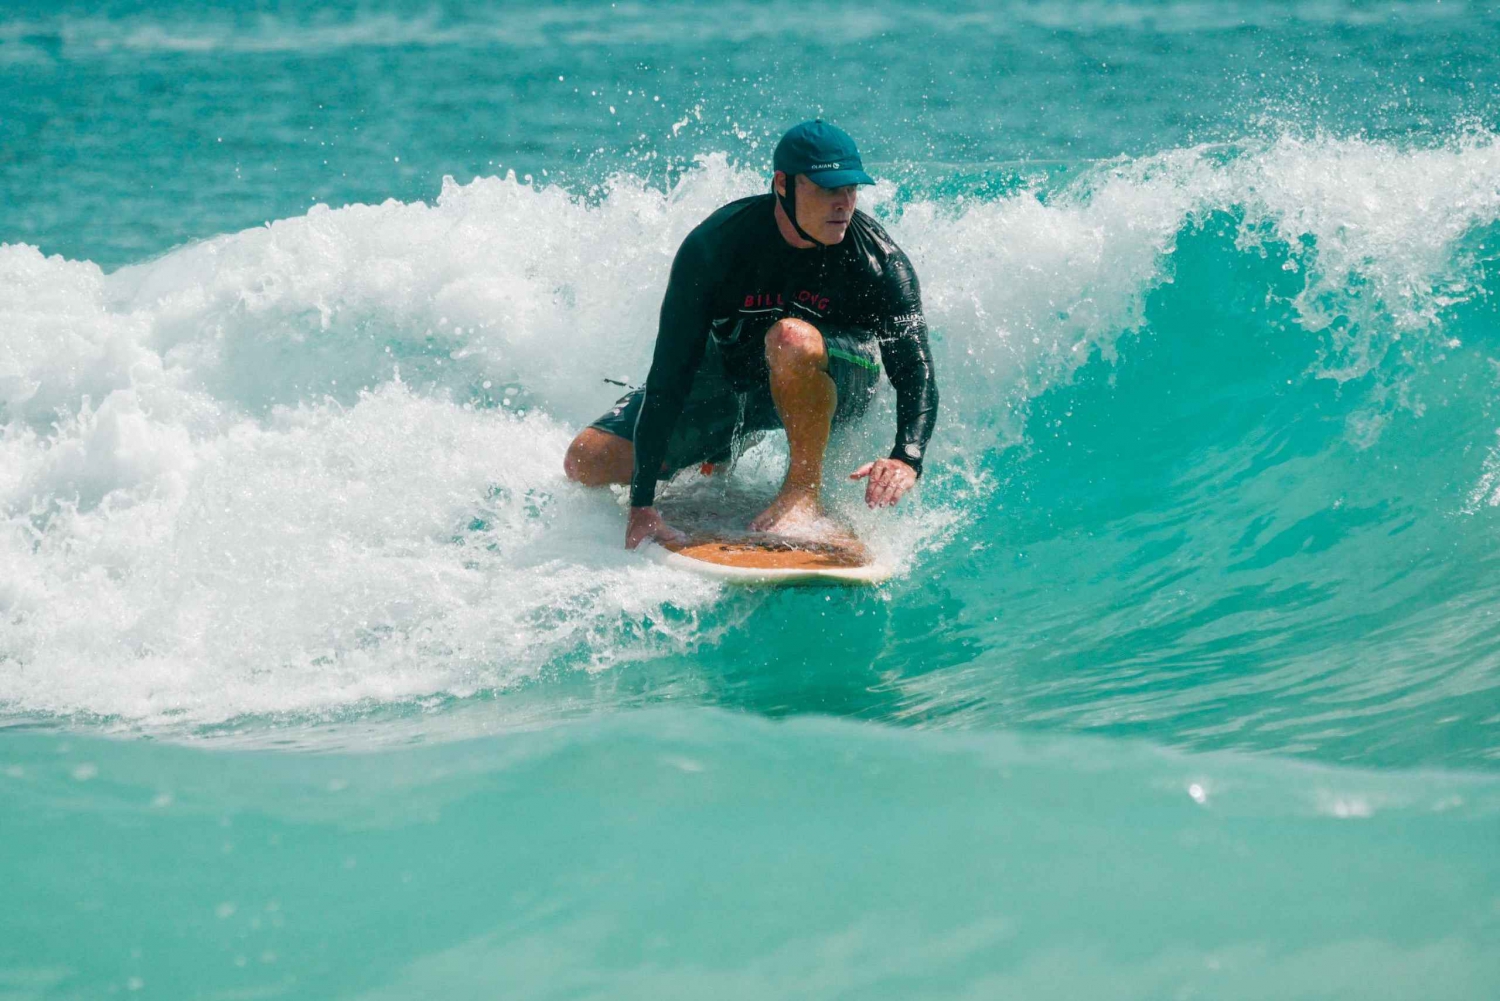 Luxus-Surf-Retreat in Thailand - 3 Tage 2 Nächte in Phuket